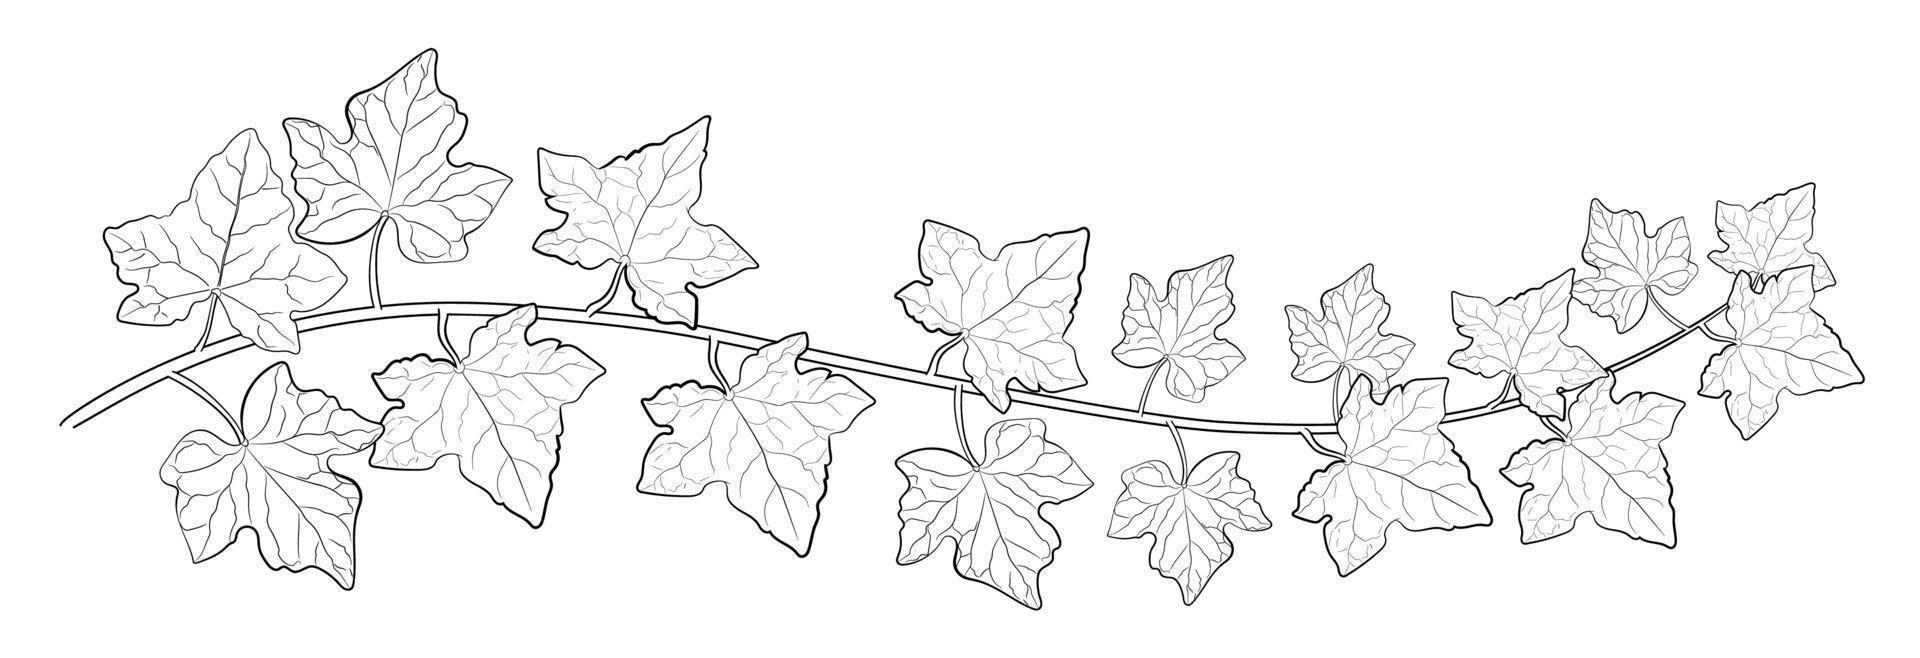 dibujo de hojas de hiedra. vector